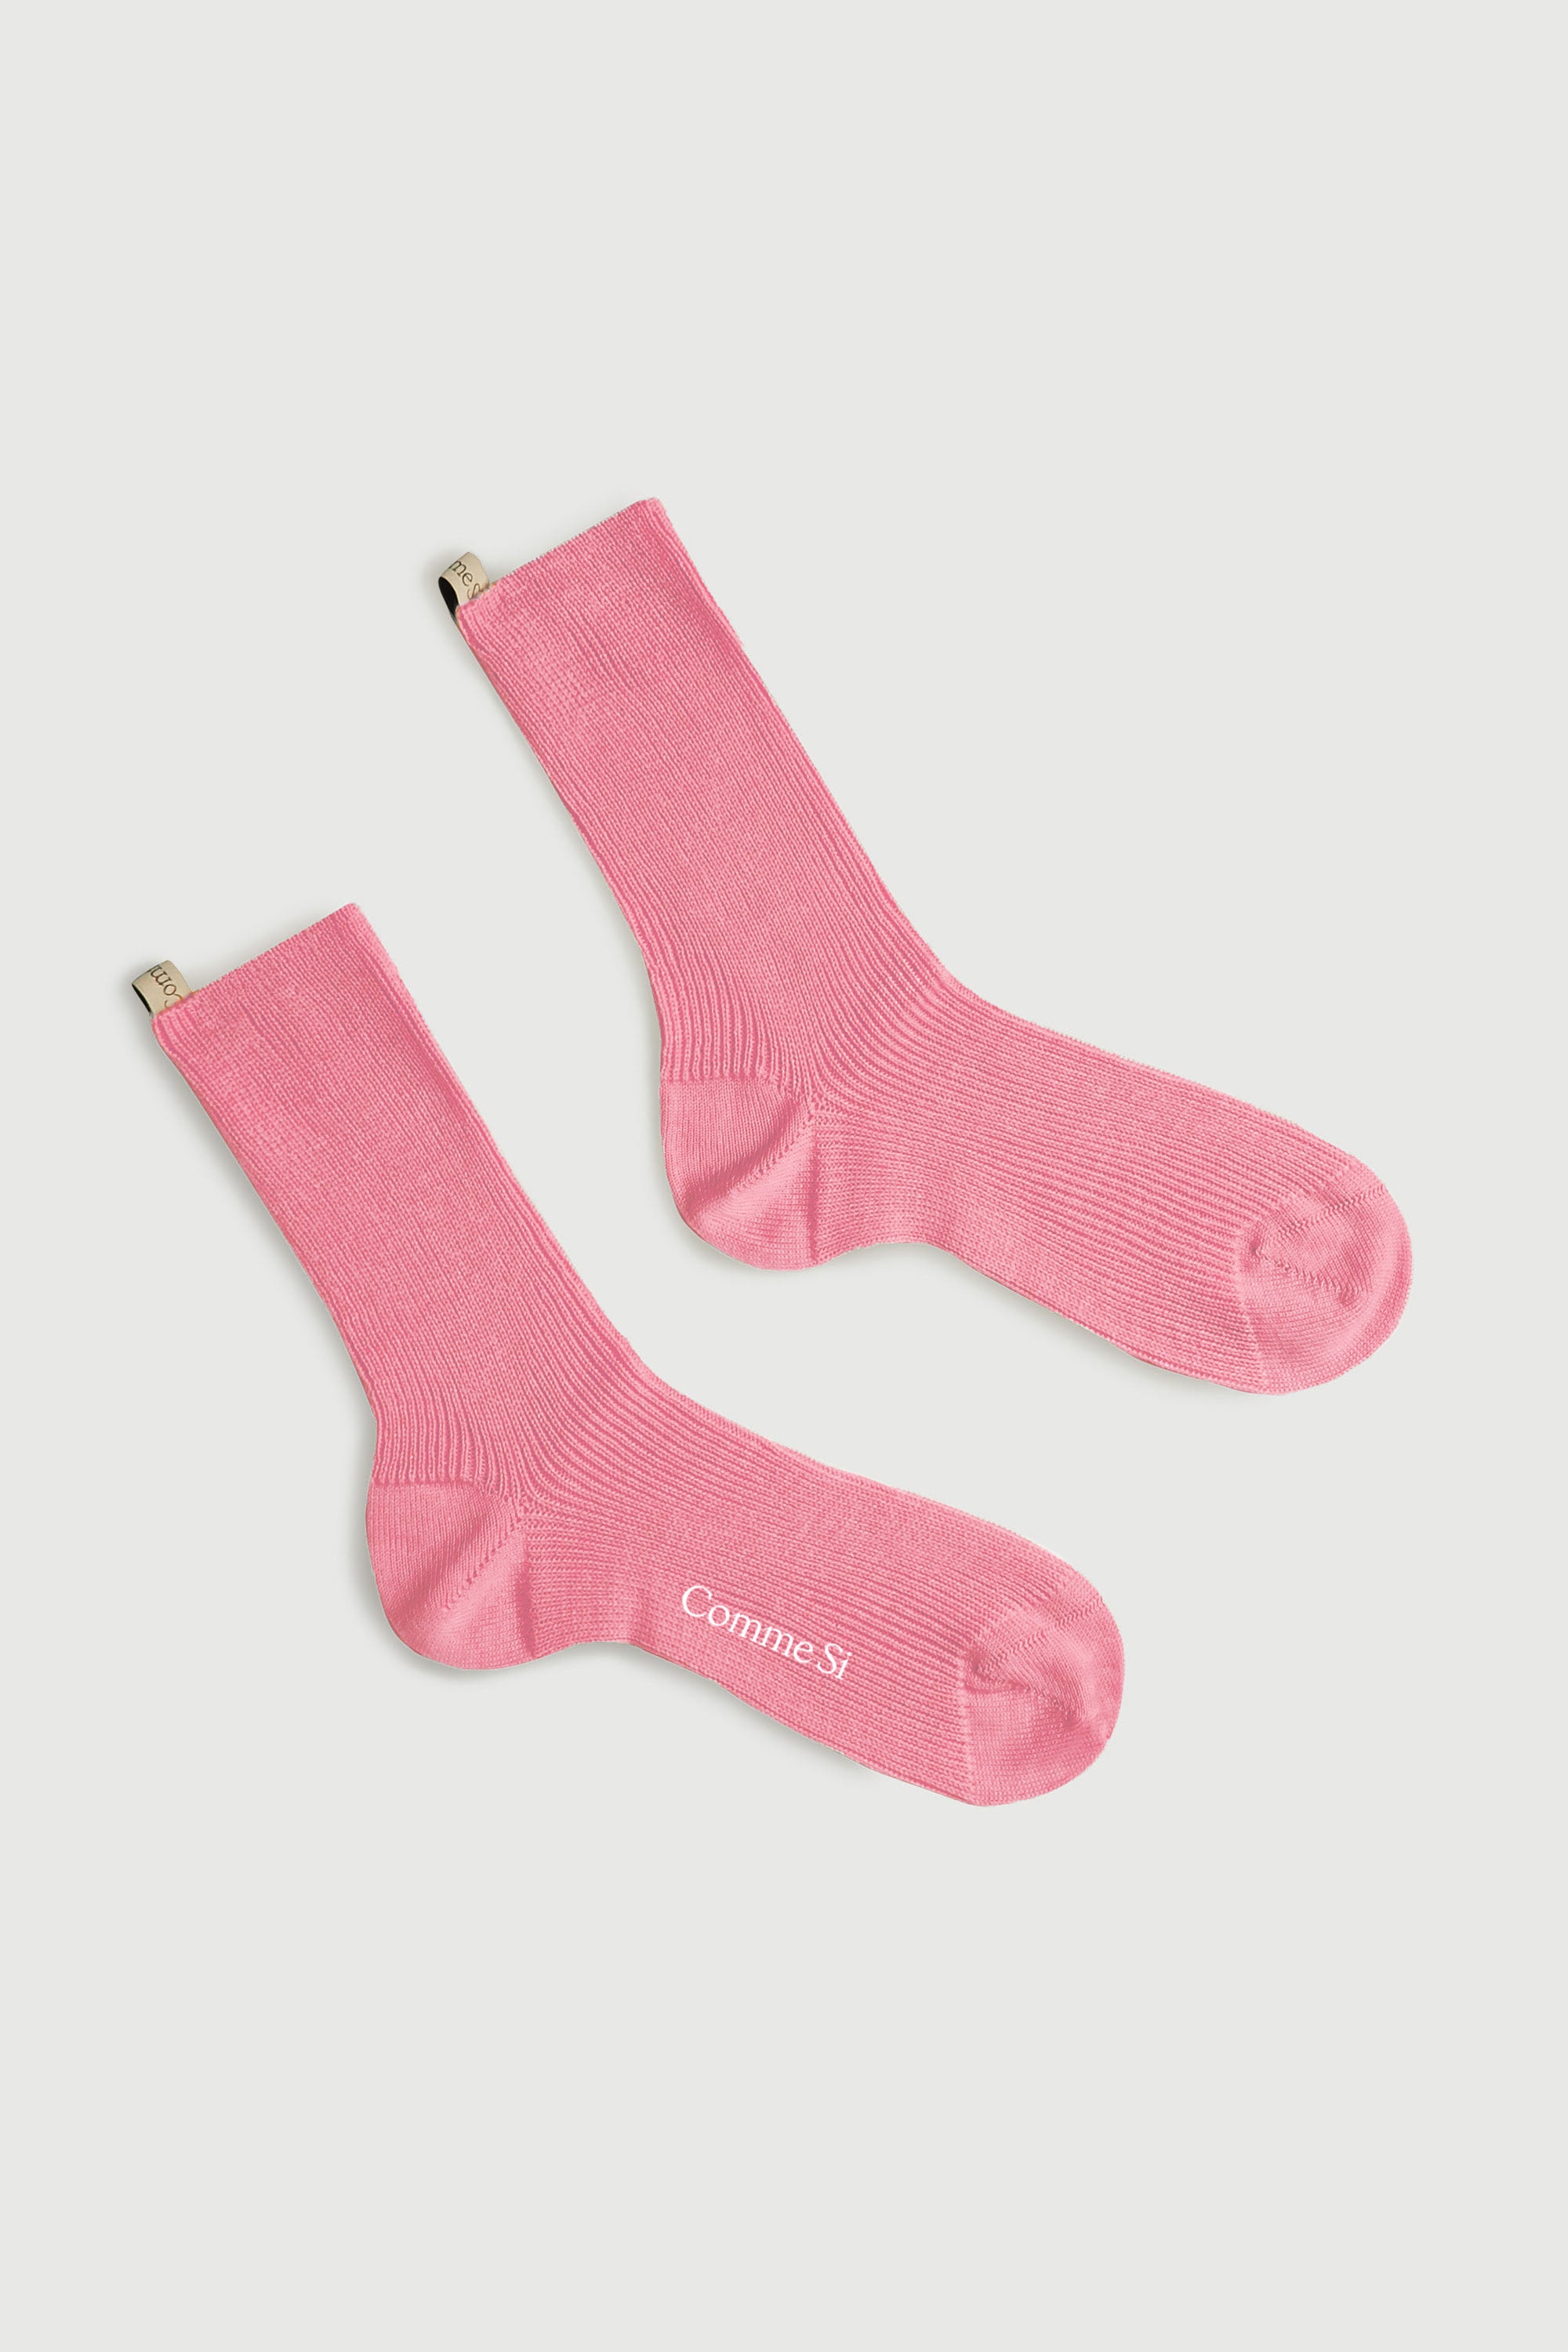 The Merino Sock in flamingo, pink merino wool